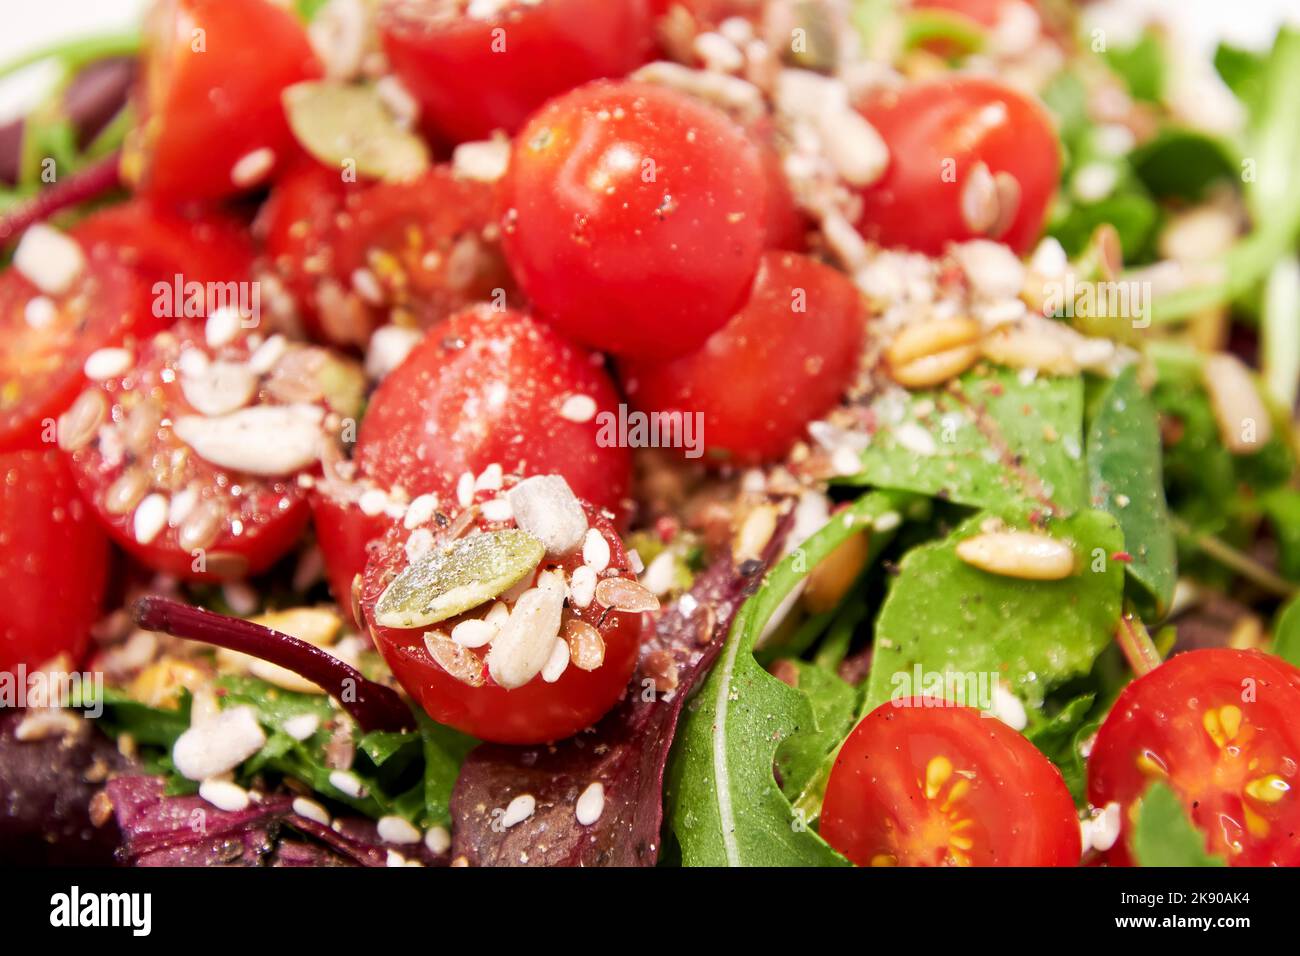 Insalata di verdure con pomodori, lattuga verde, semi e olio, sale, pepe. Texture di fondo del cibo Foto Stock